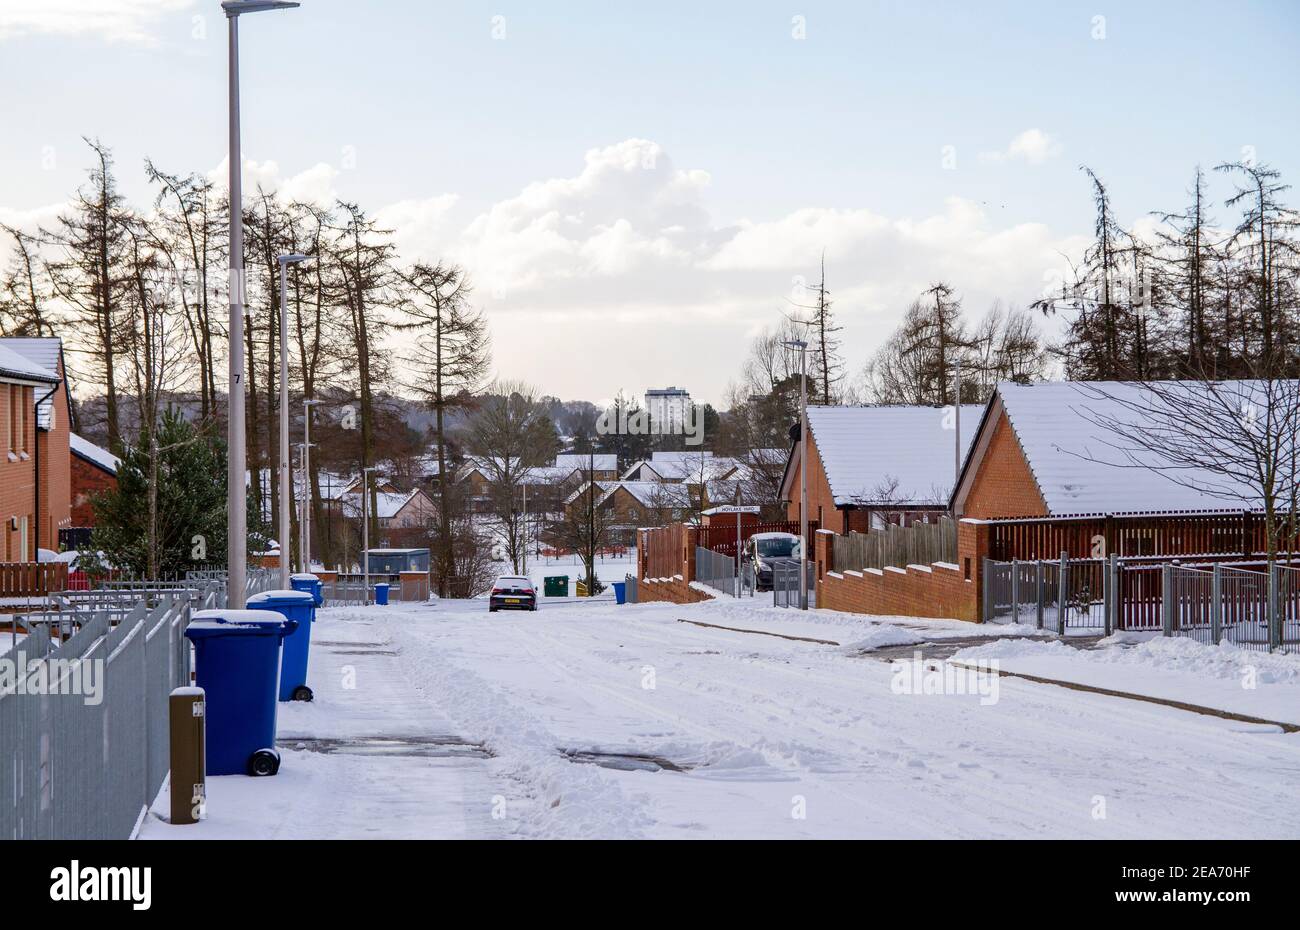 Dundee, Tayside, Écosse, Royaume-Uni. 8 février 2021. Météo au Royaume-Uni : vents froids et fortes tempêtes de neige balayant le nord-est de l'Écosse avec des températures atteignant 2°C. La tempête Darcy a provoqué de fortes chutes de neige à Dundee et a provoqué le chaos sur les routes dans et autour de la ville. Crédit : Dundee Photographics/Alamy Live News Banque D'Images